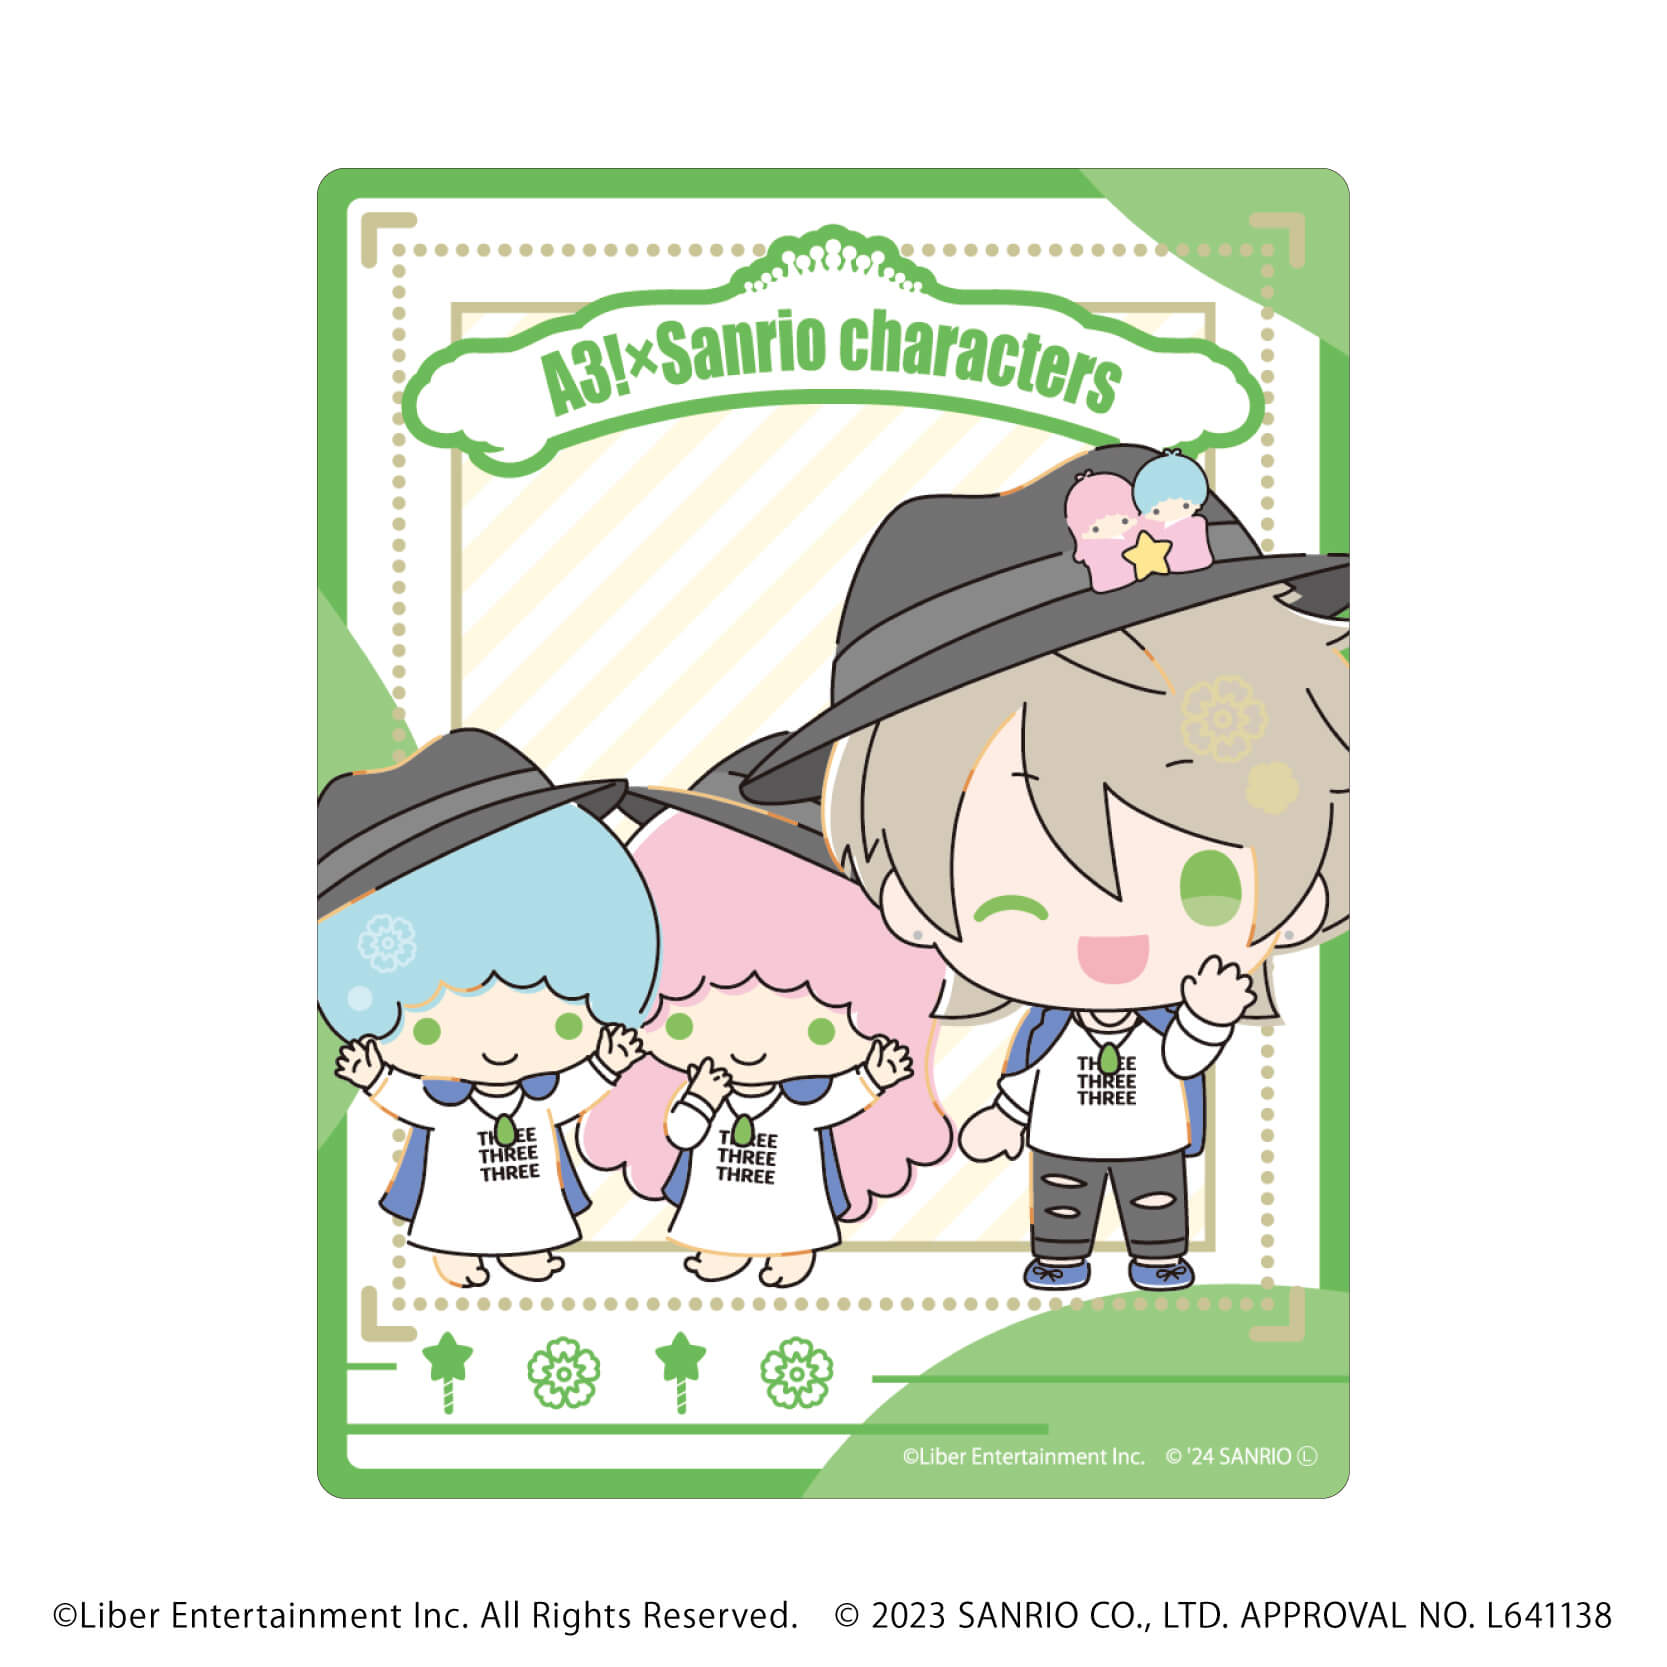 アクリルカード「A3!×Sanrio characters」09/S＆S コンプリートBOX(全12種)(ミニキャライラスト)